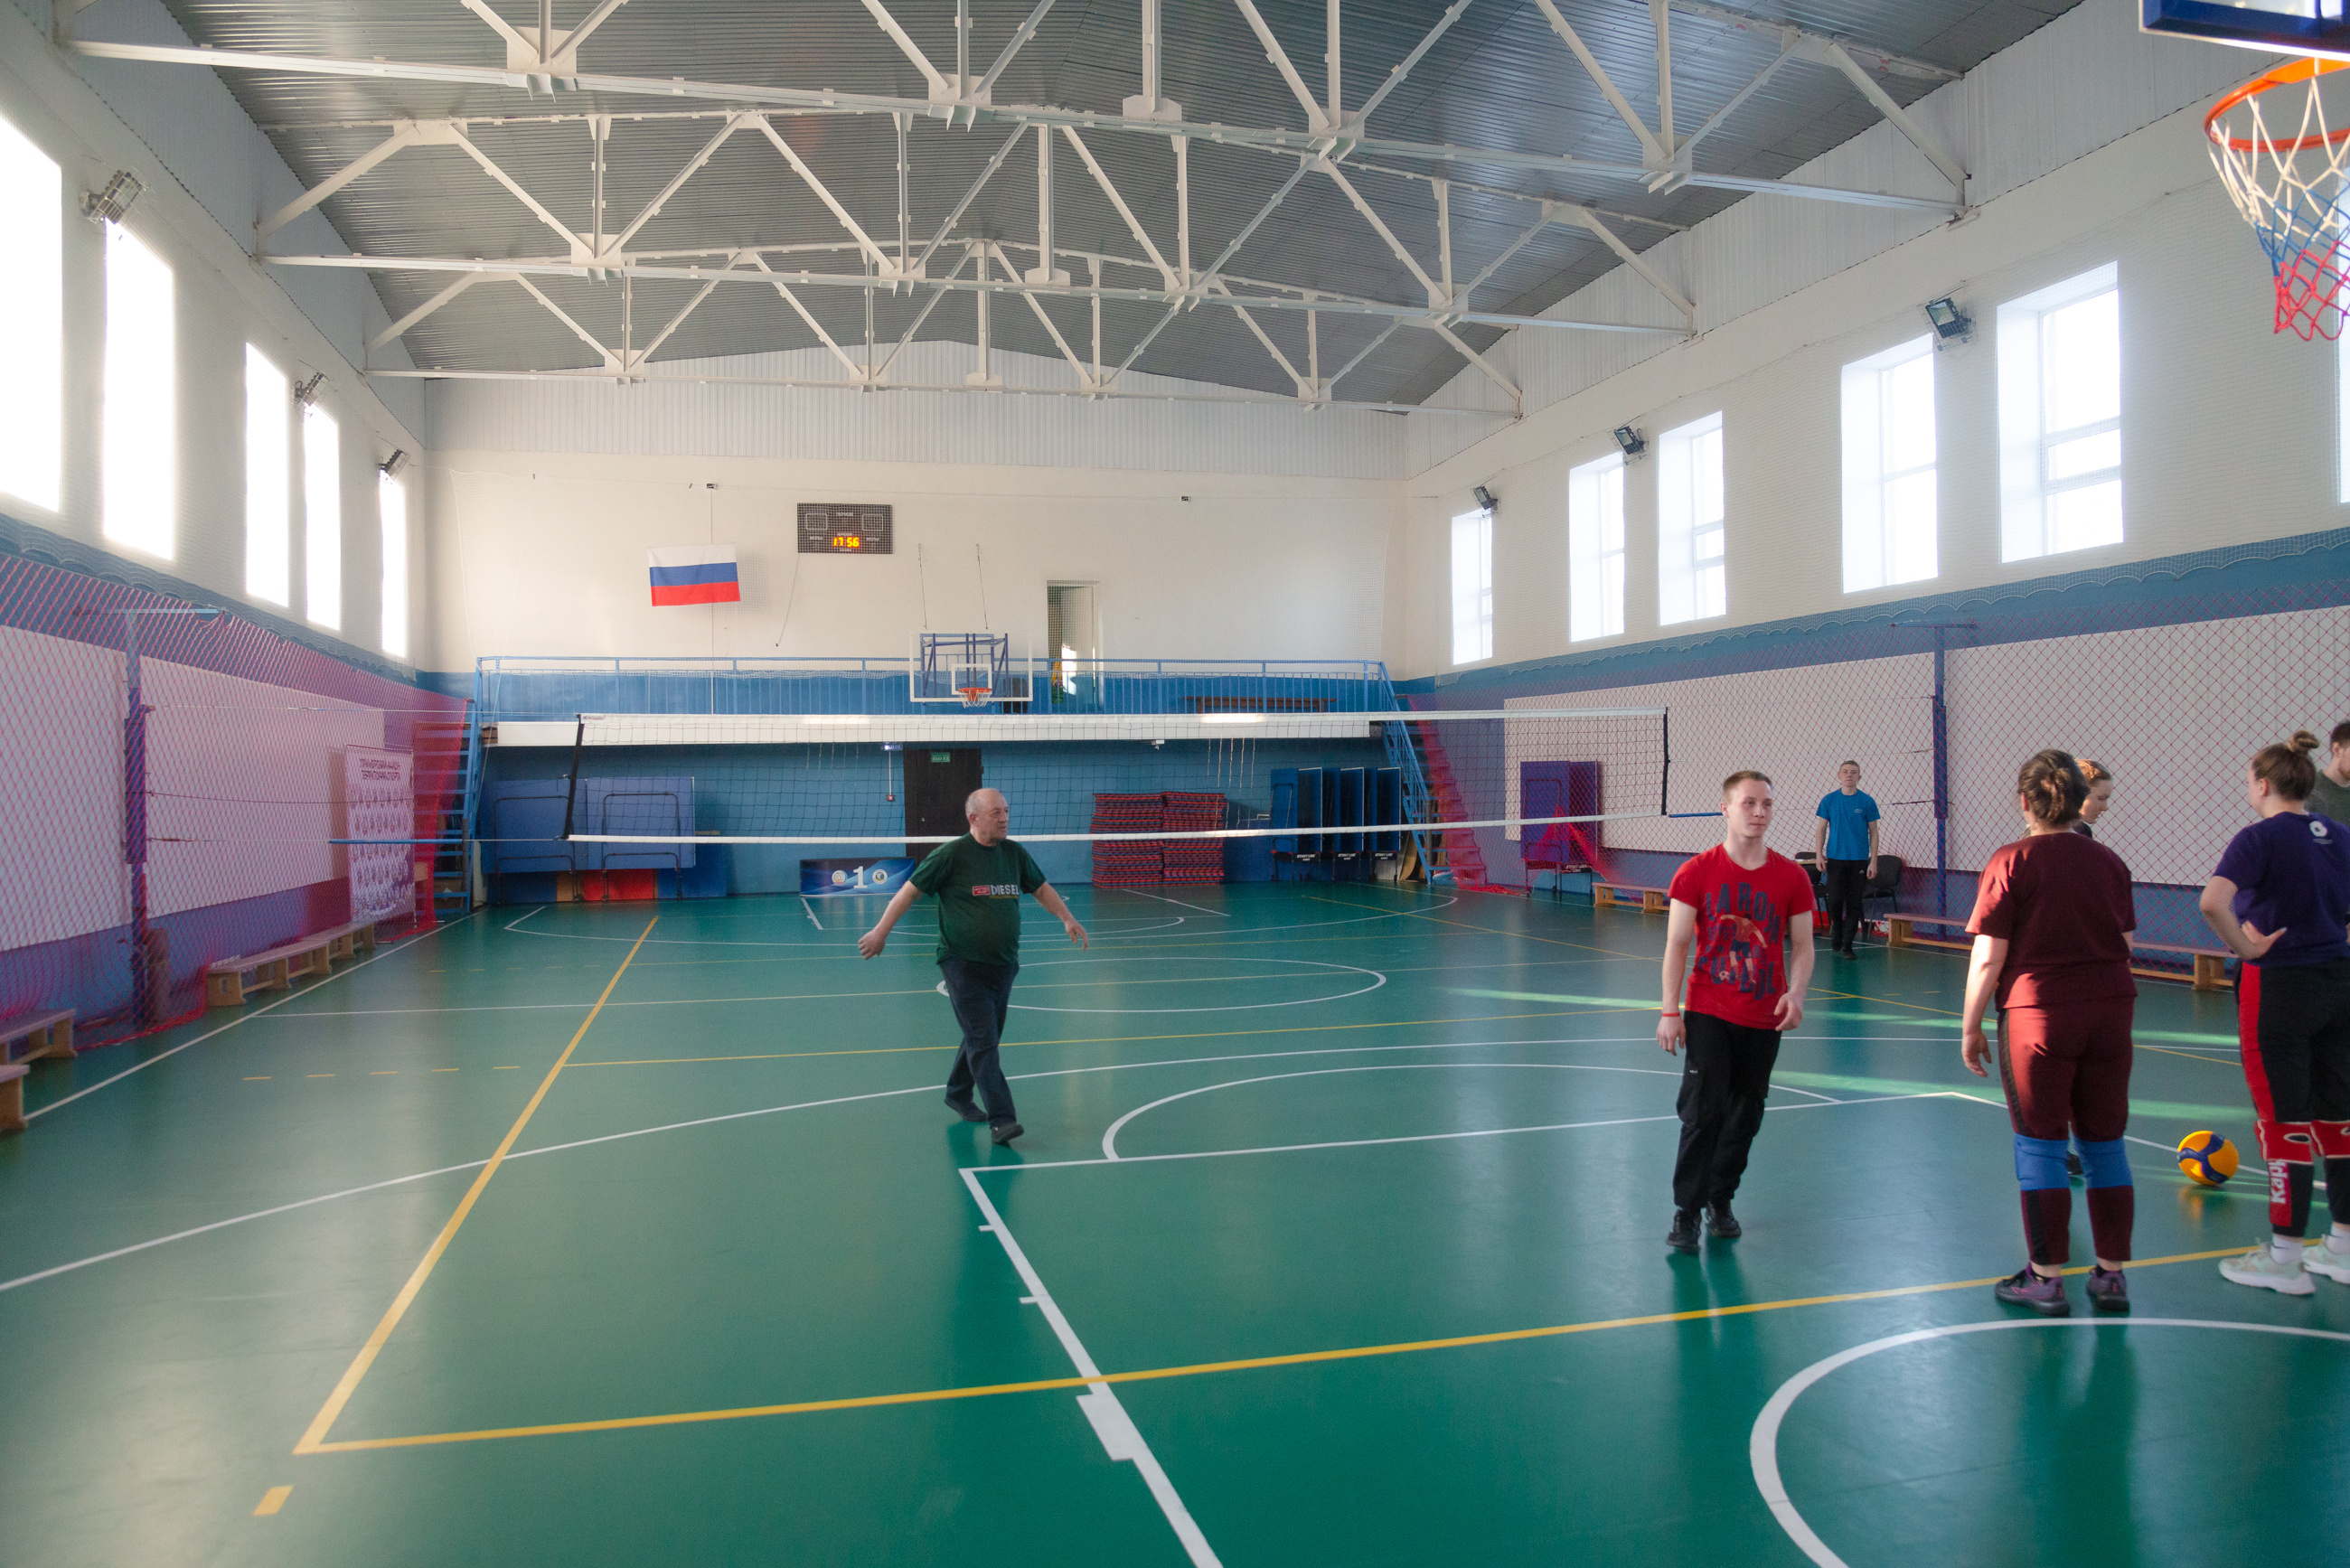 По средам в 18:00 в центре играют в волейбол — можно присоединяться бесплатно